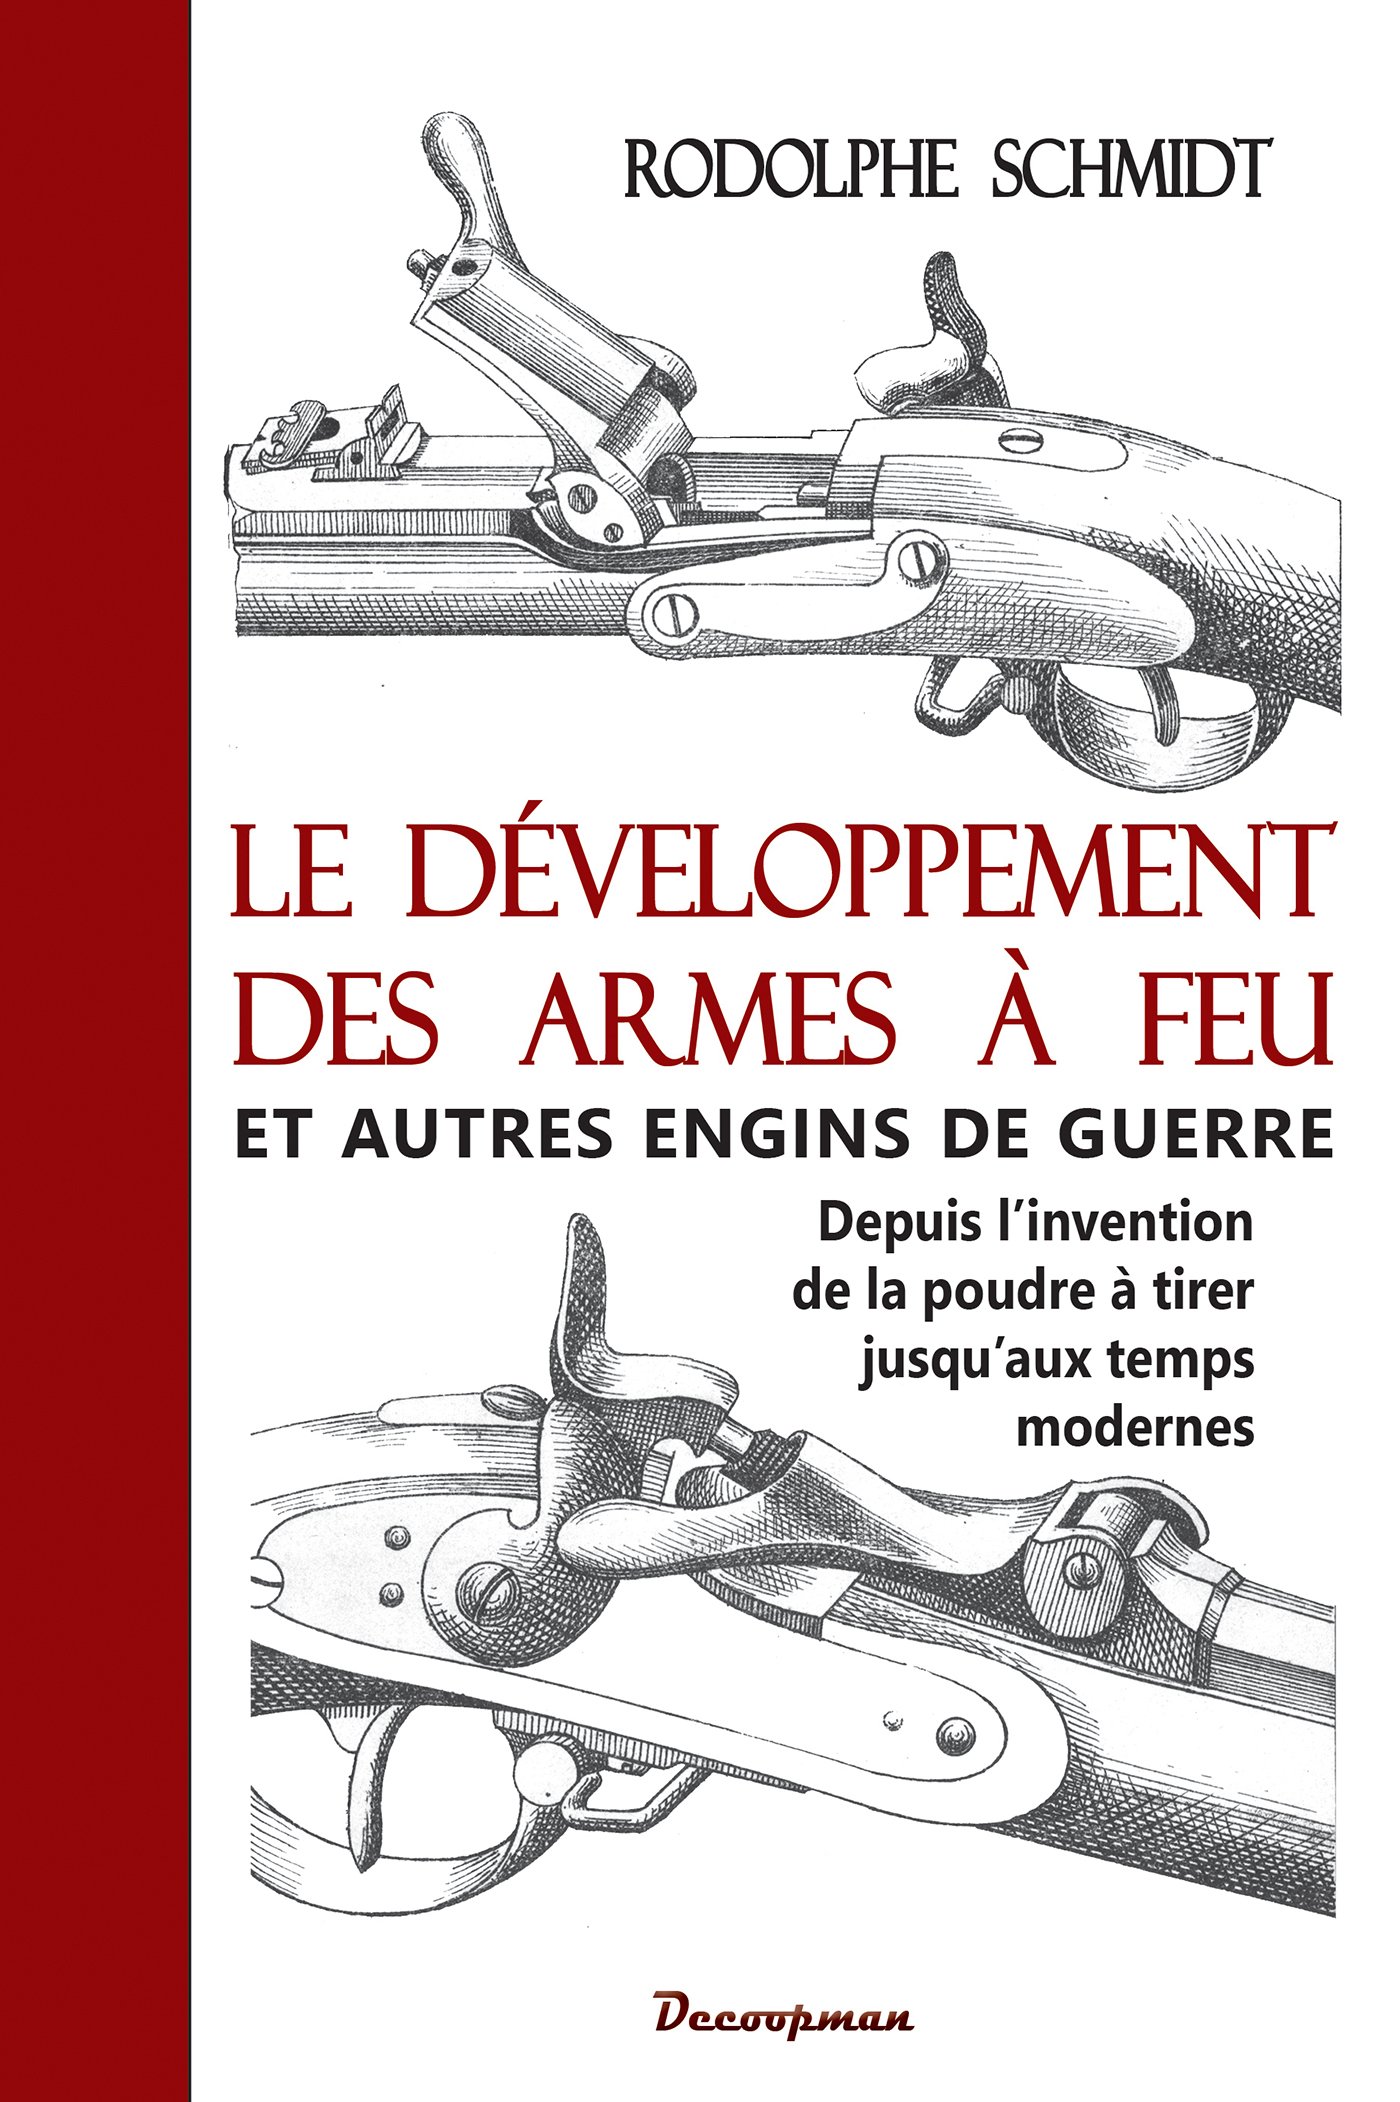 Le développement des armes à feu et autres engins de guerre. Depuis l'invention de la poudre à tirer jusqu'aux temps modernes, 2016, 364 p.